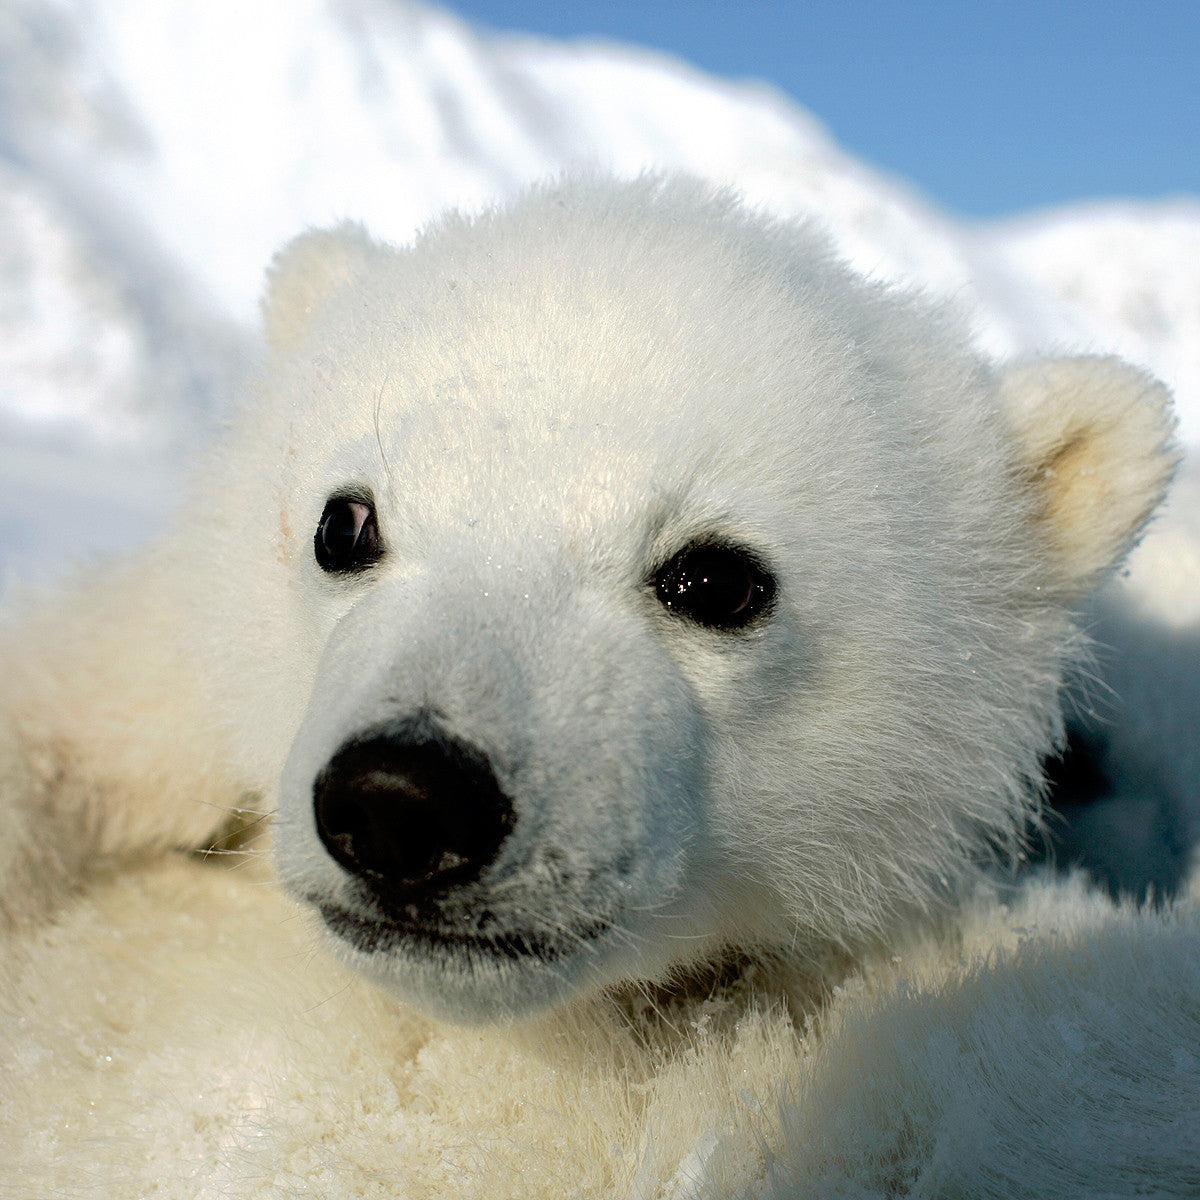 préservons les prochaines générations d’ours polaires - WWF-Canada